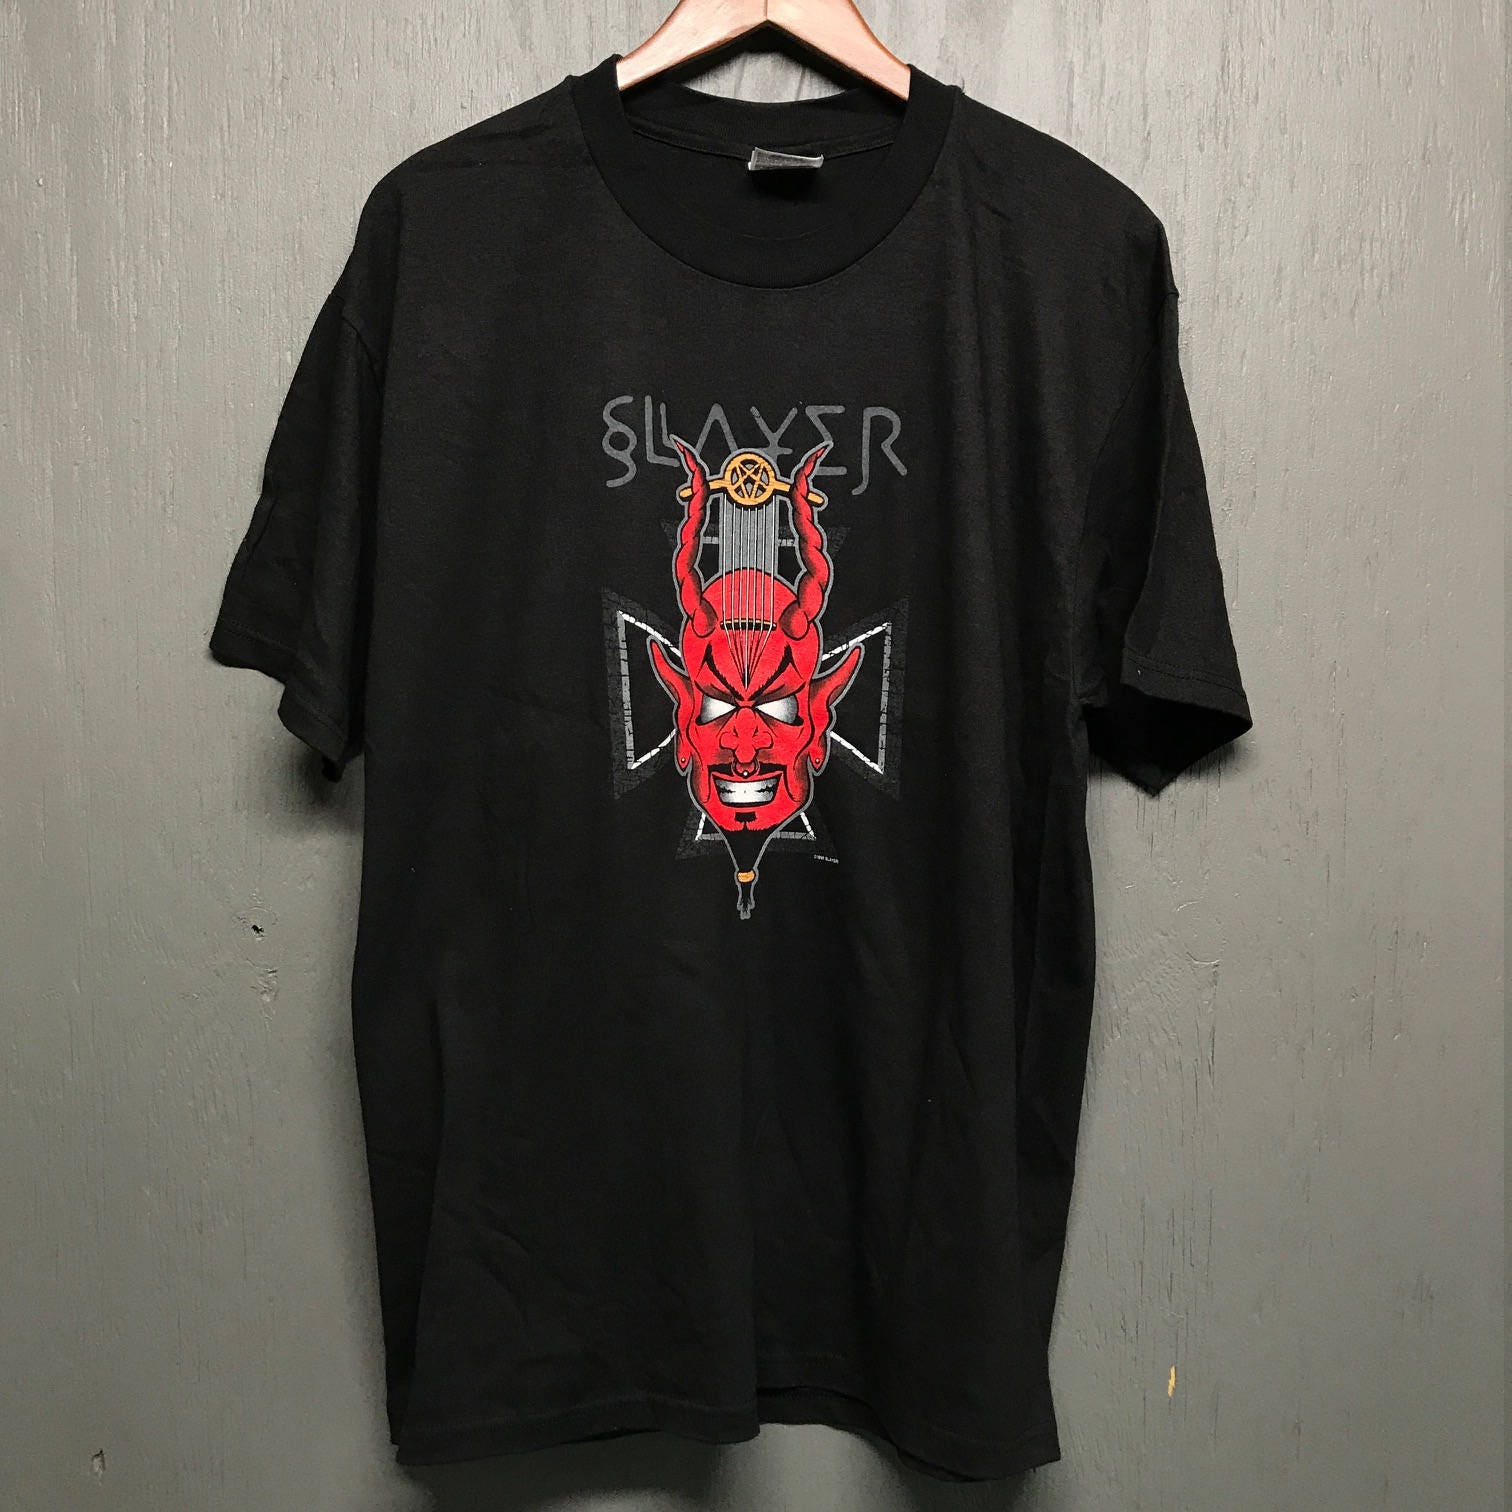 L Deadstock vintage 90s Slayer tour t shirt